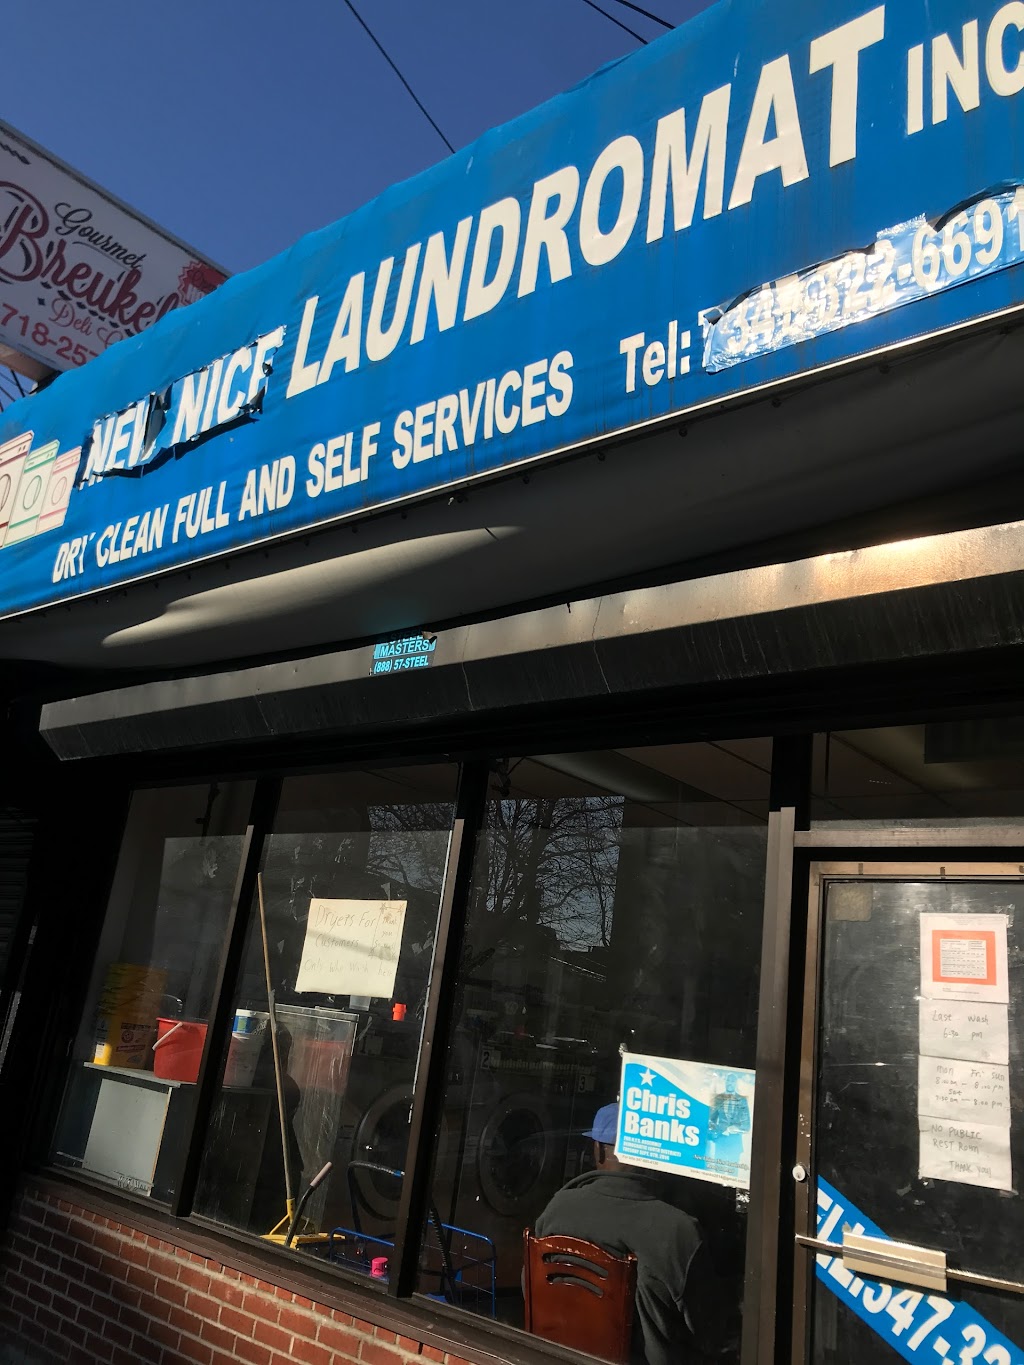 New Nice Laundromat Inc - laundry  | Photo 1 of 1 | Address: 10319 Glenwood Rd, Brooklyn, NY 11236, USA | Phone: (347) 322-6691